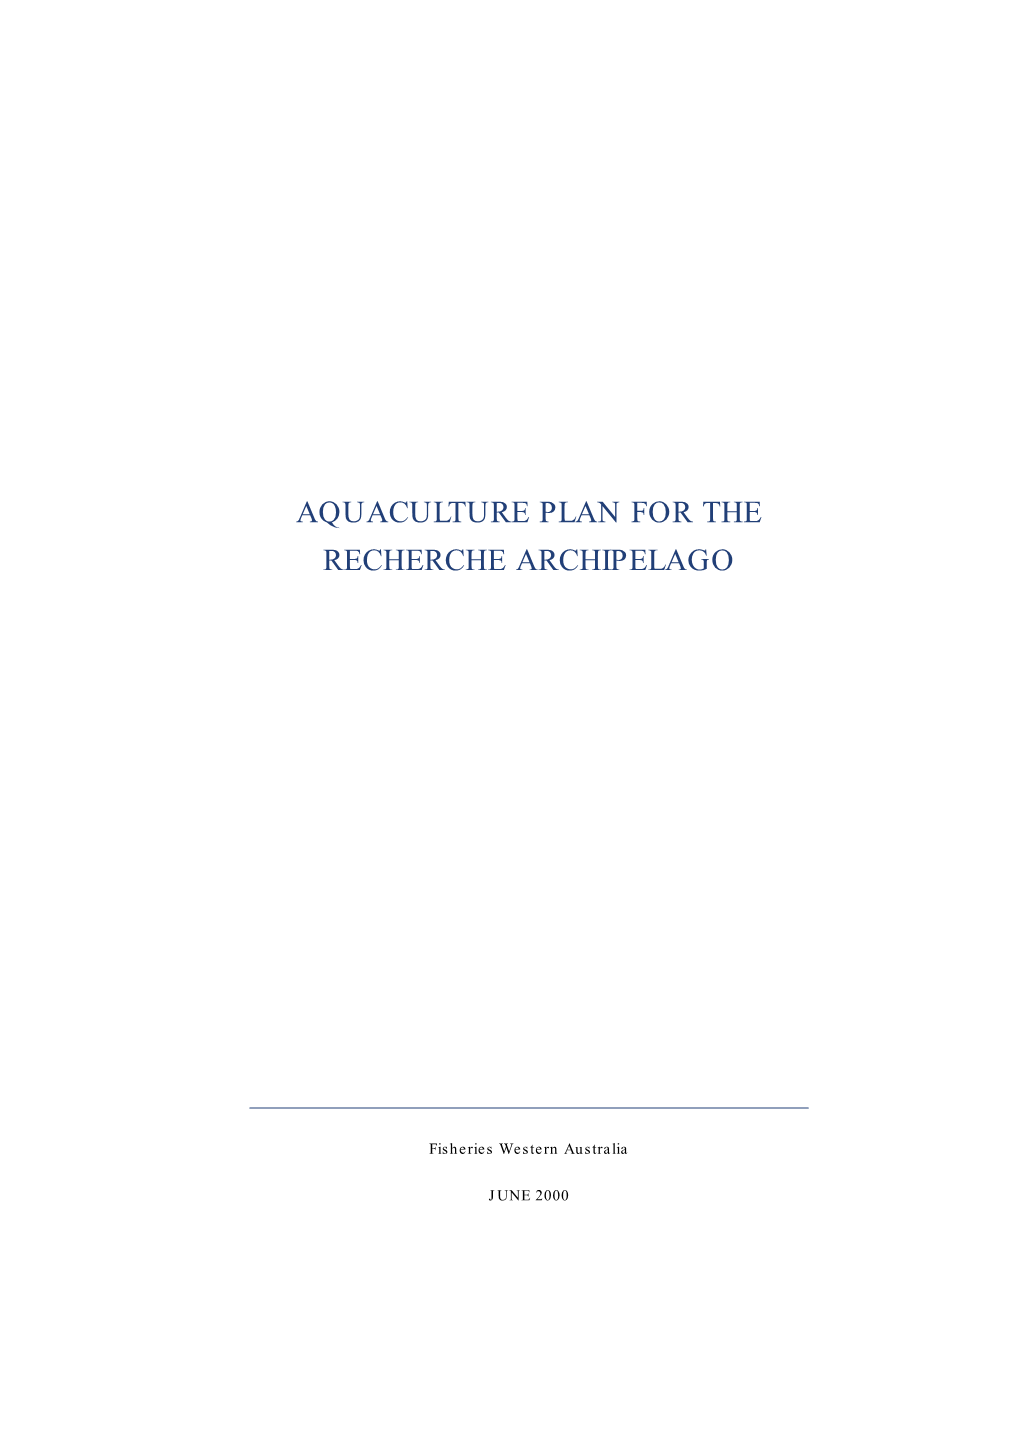 Management Paper 140 Aquaculture Plan for the Recherche Archipelago